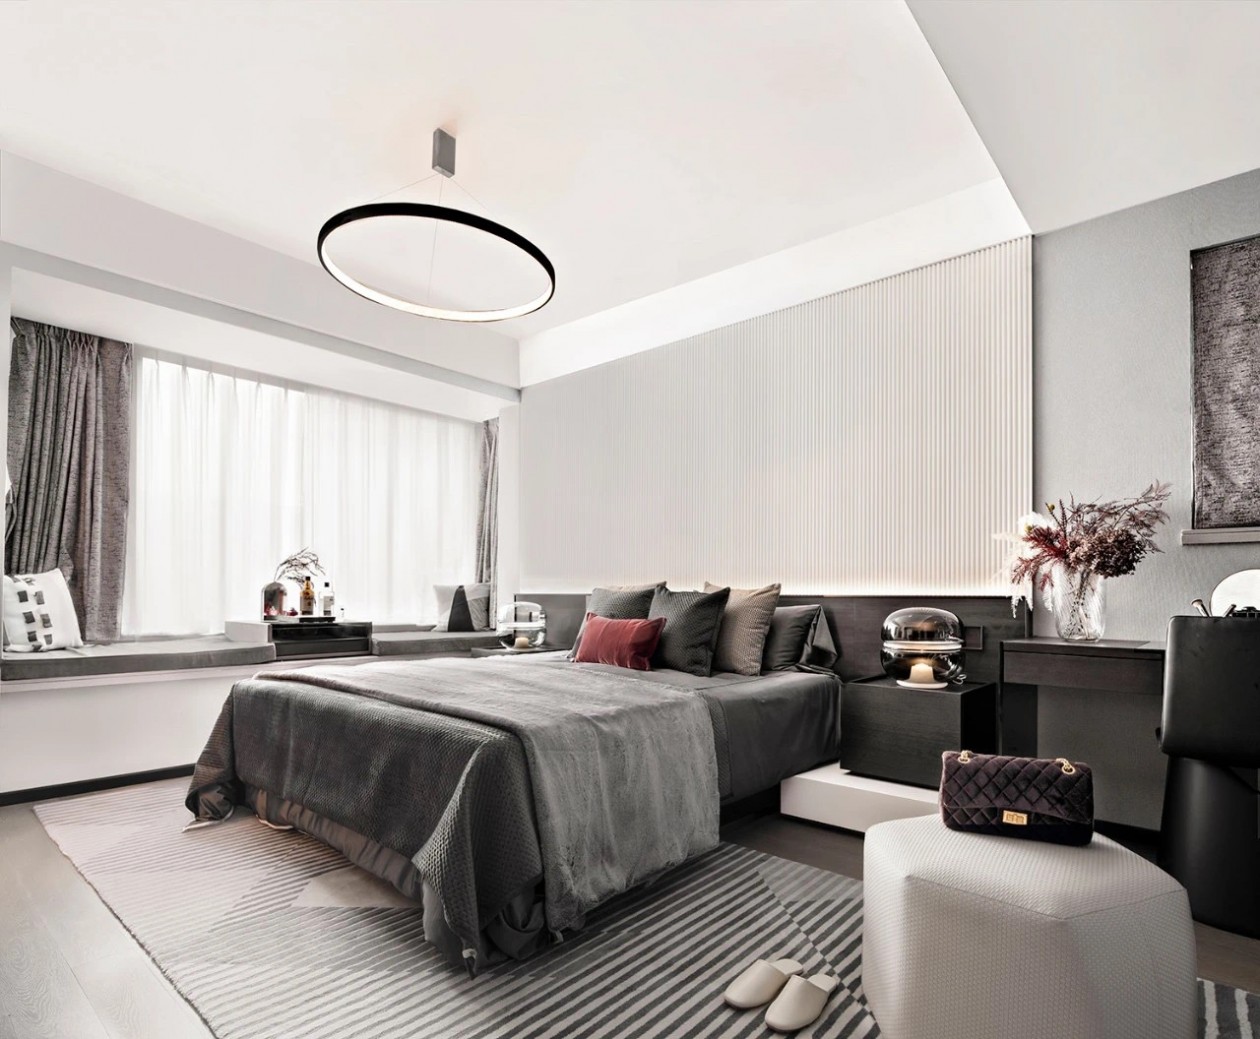 卧室沿用黑色与白色为主题，背景墙层次感分明，深色床品营造静谧的睡眠环境。